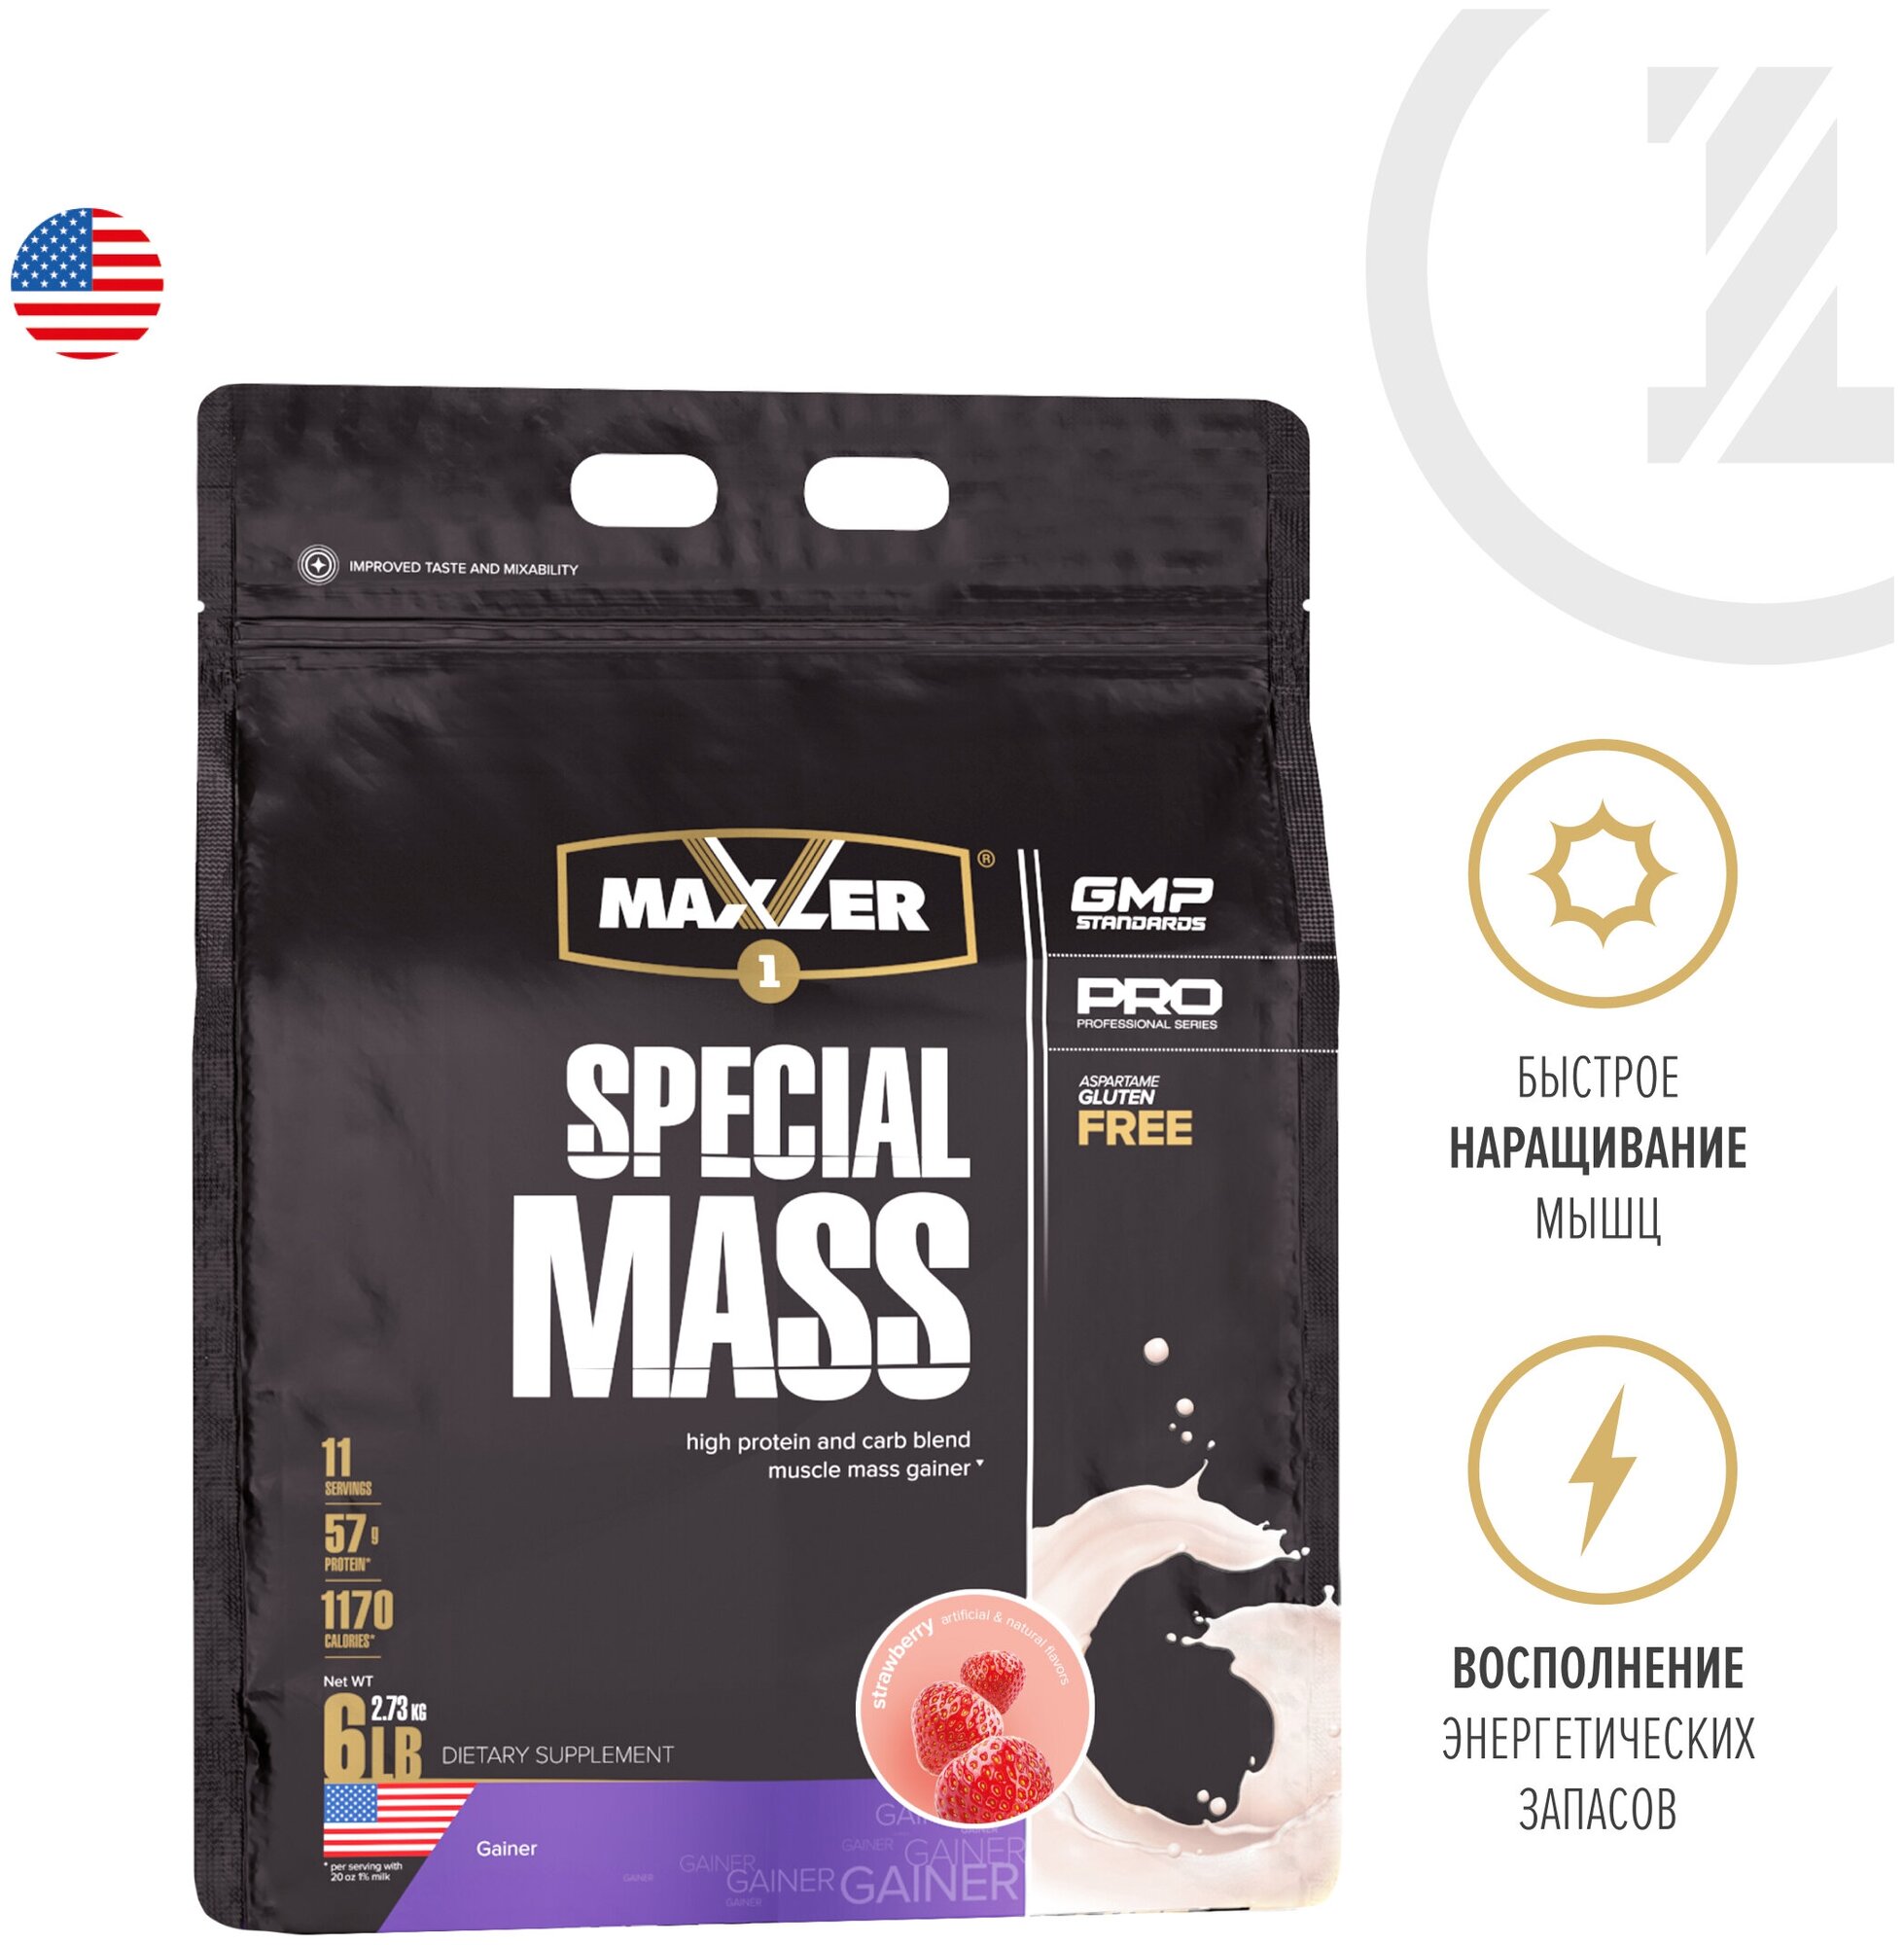 Гейнер Maxler Special Mass 6 lb (2640 гр.) + повышенное содержание протеина, креатин моногидрат и BCAA - Клубника